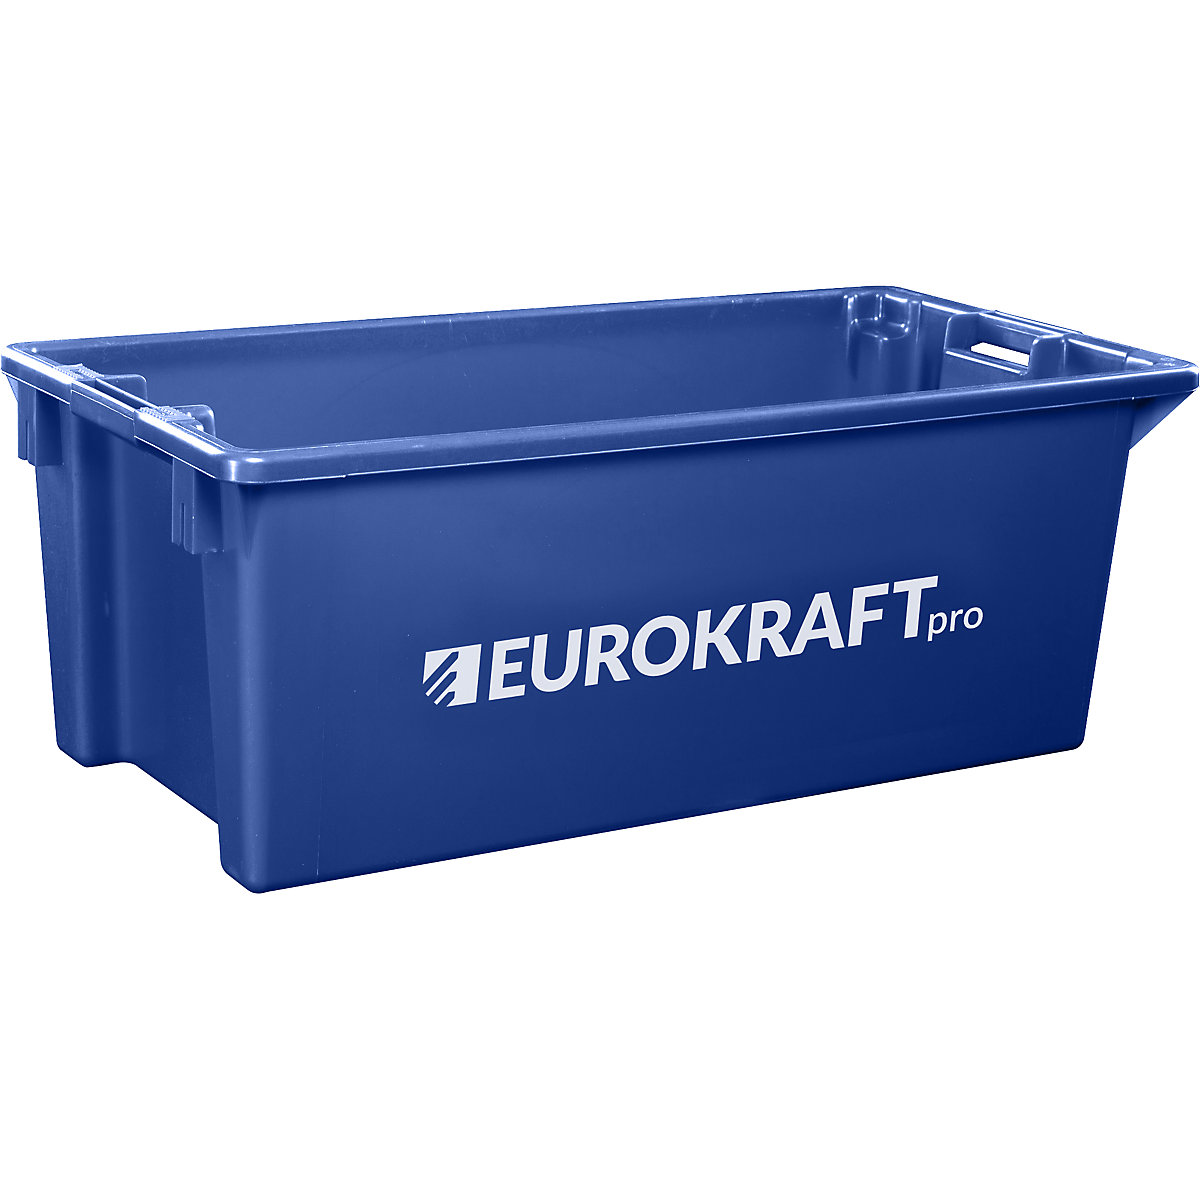 EUROKRAFTpro Drehstapelbehälter aus lebensmittelechtem Polypropylen, Inhalt 13 Liter, VE 4 Stk, Wände und Boden geschlossen, blau